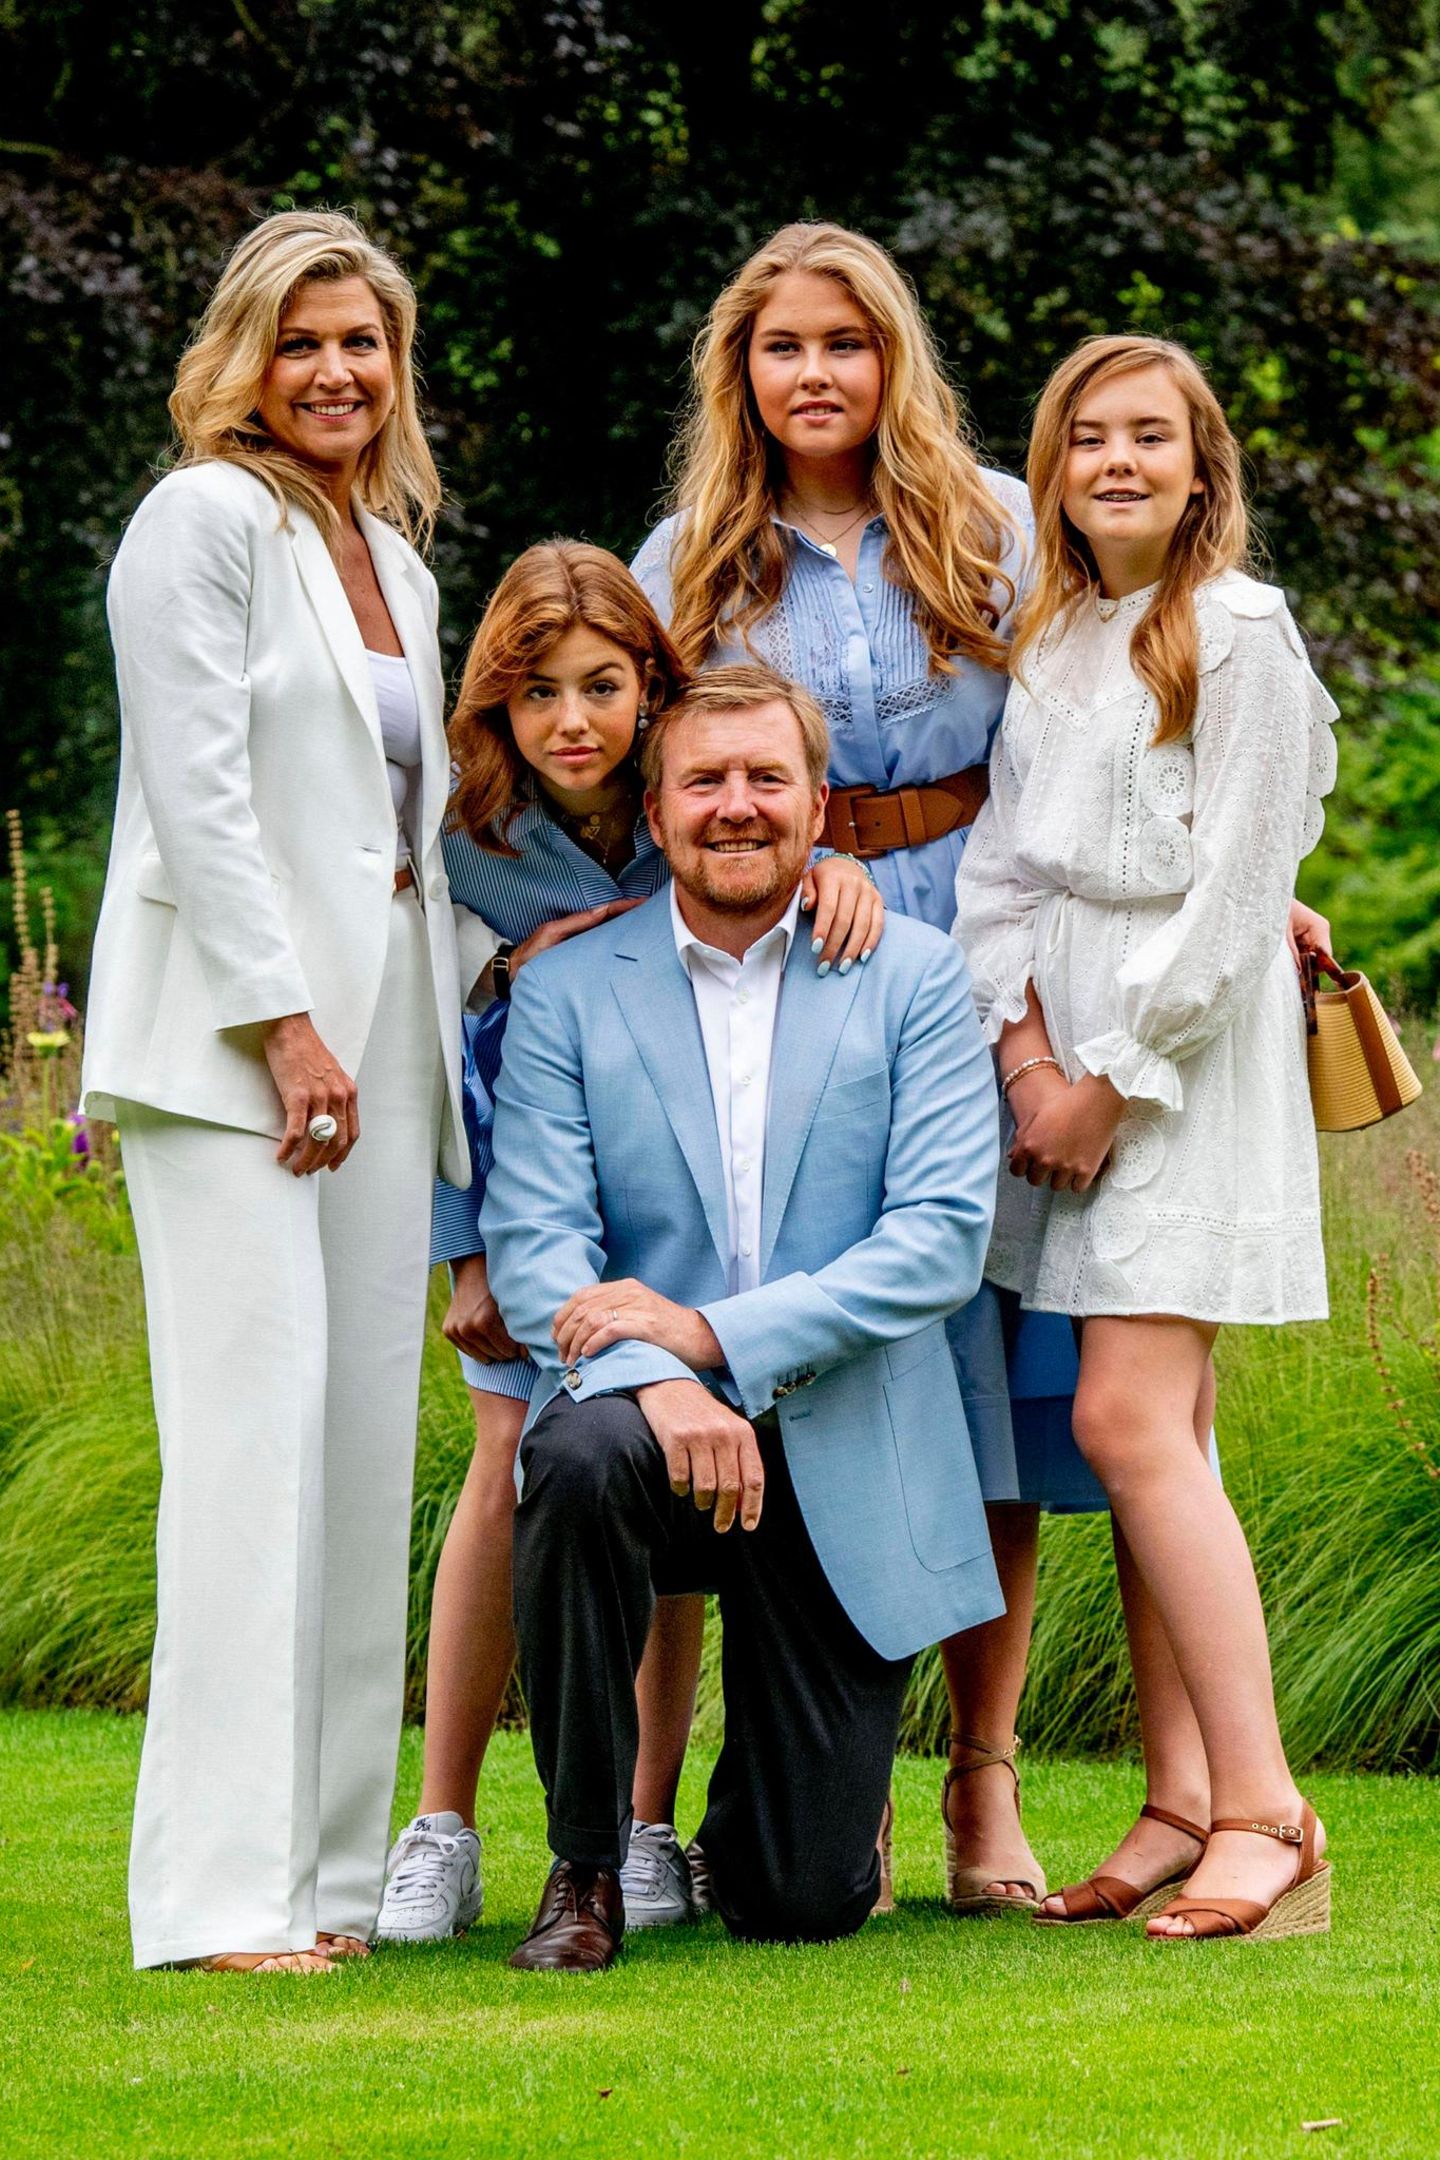 Welch ein royales Traum-Quintett! Und König Willem-Alexander ist der glückliche Hahn im Korb. Stolz posiert er umringt von Ehefrau und Töchtern.